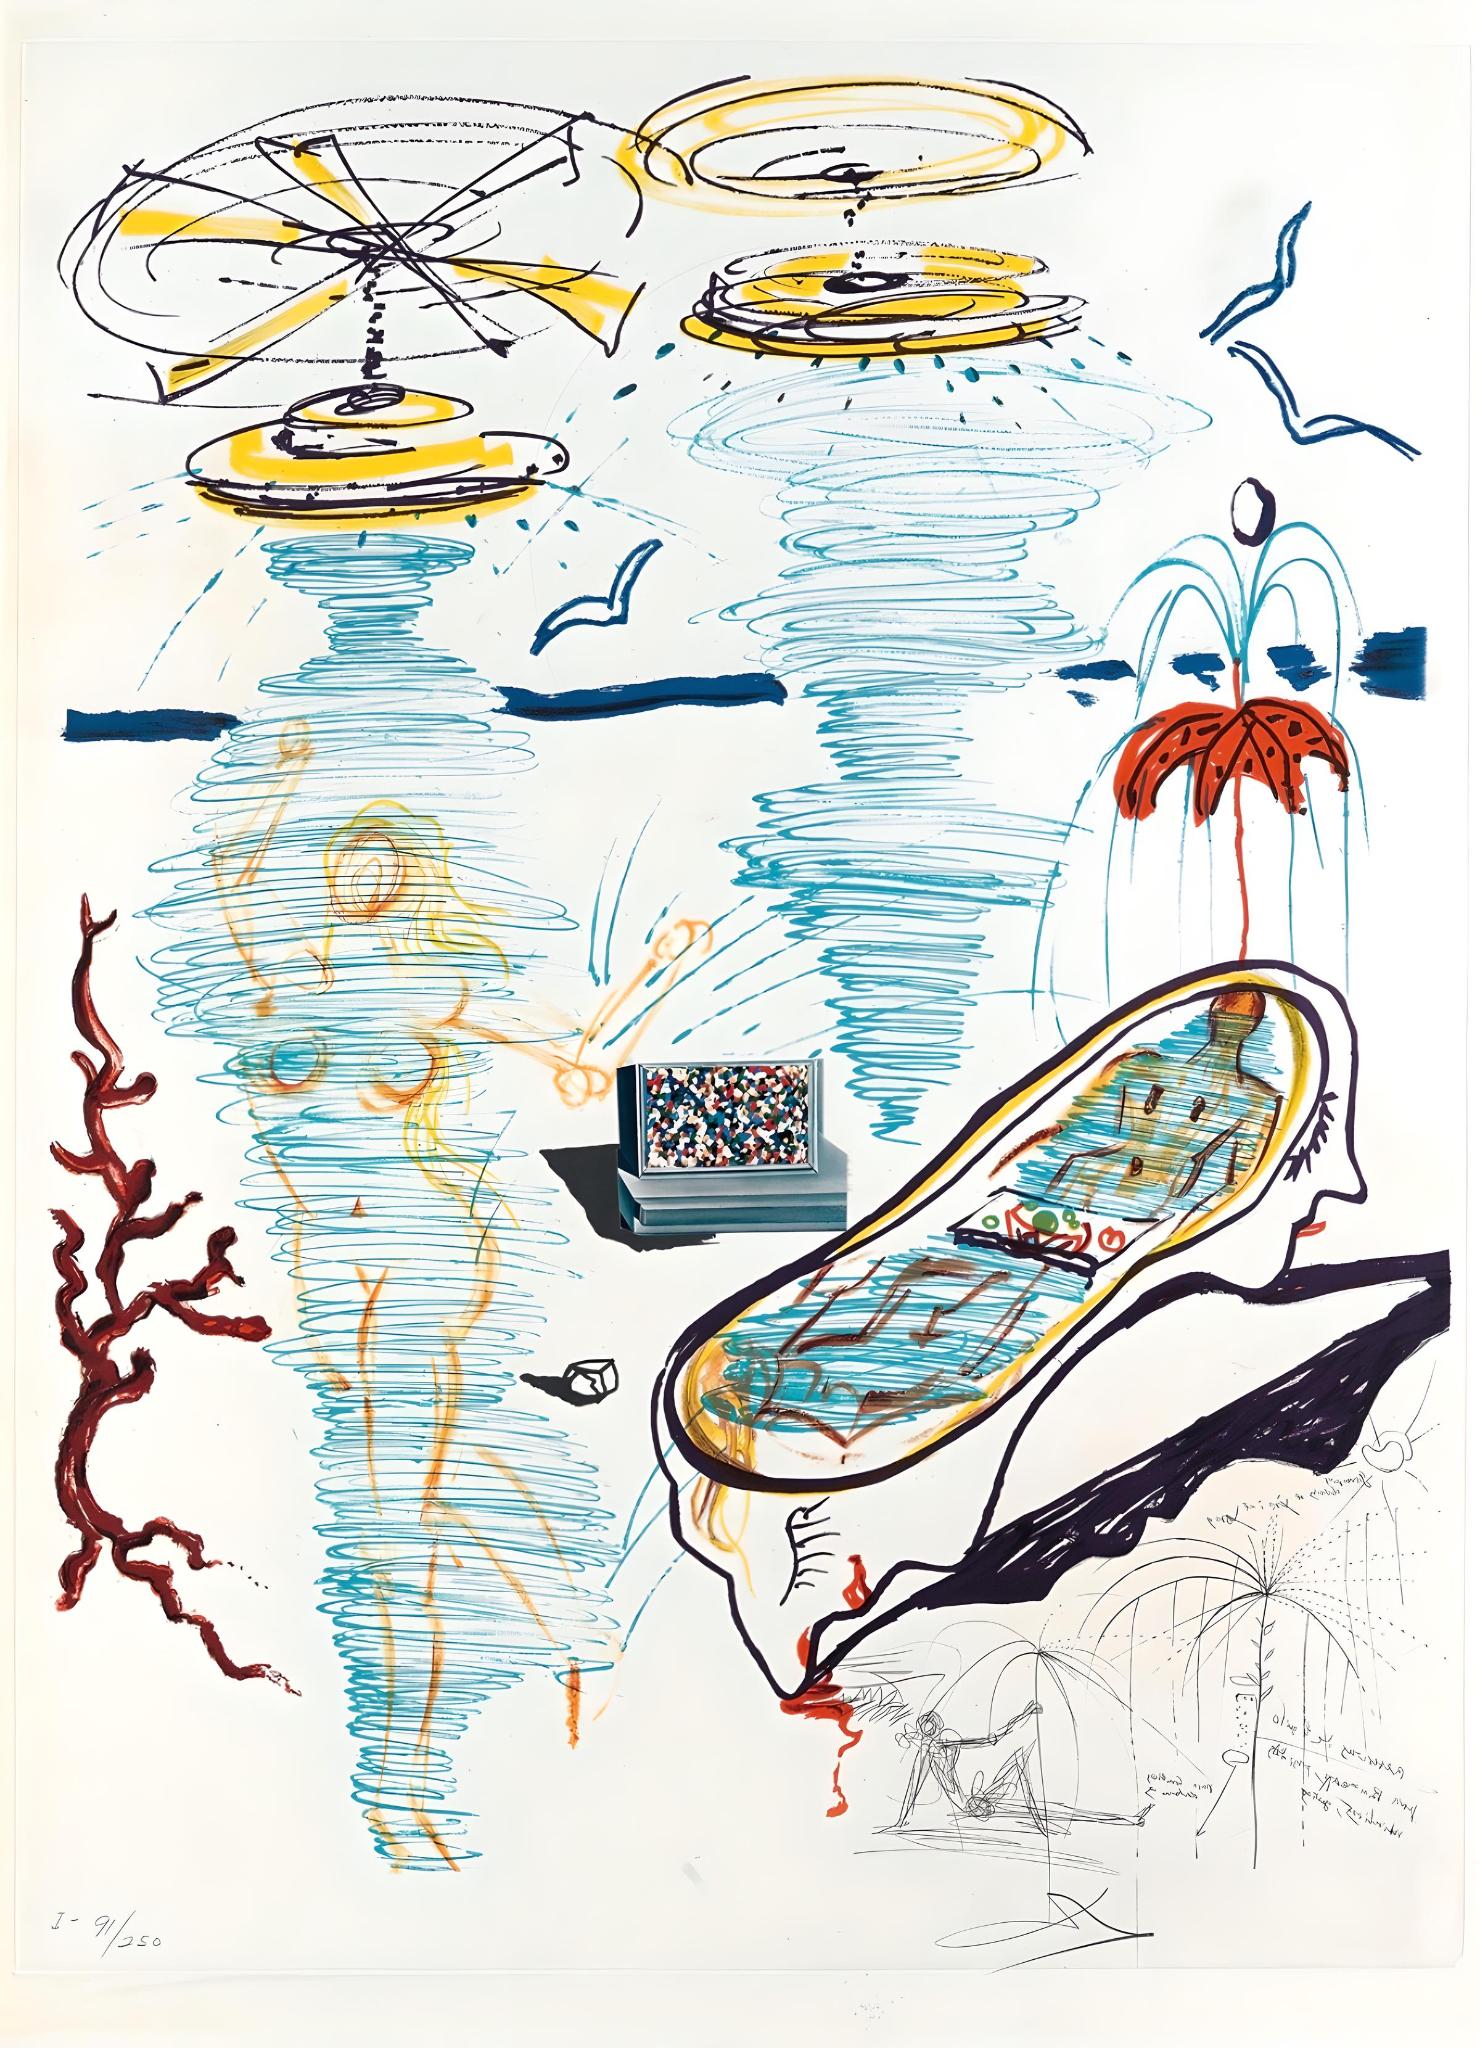 Salvador Dalí Landscape Print - Liquid Tornado Bathtub (Imagination & Objects of the Future), Salvador Dali